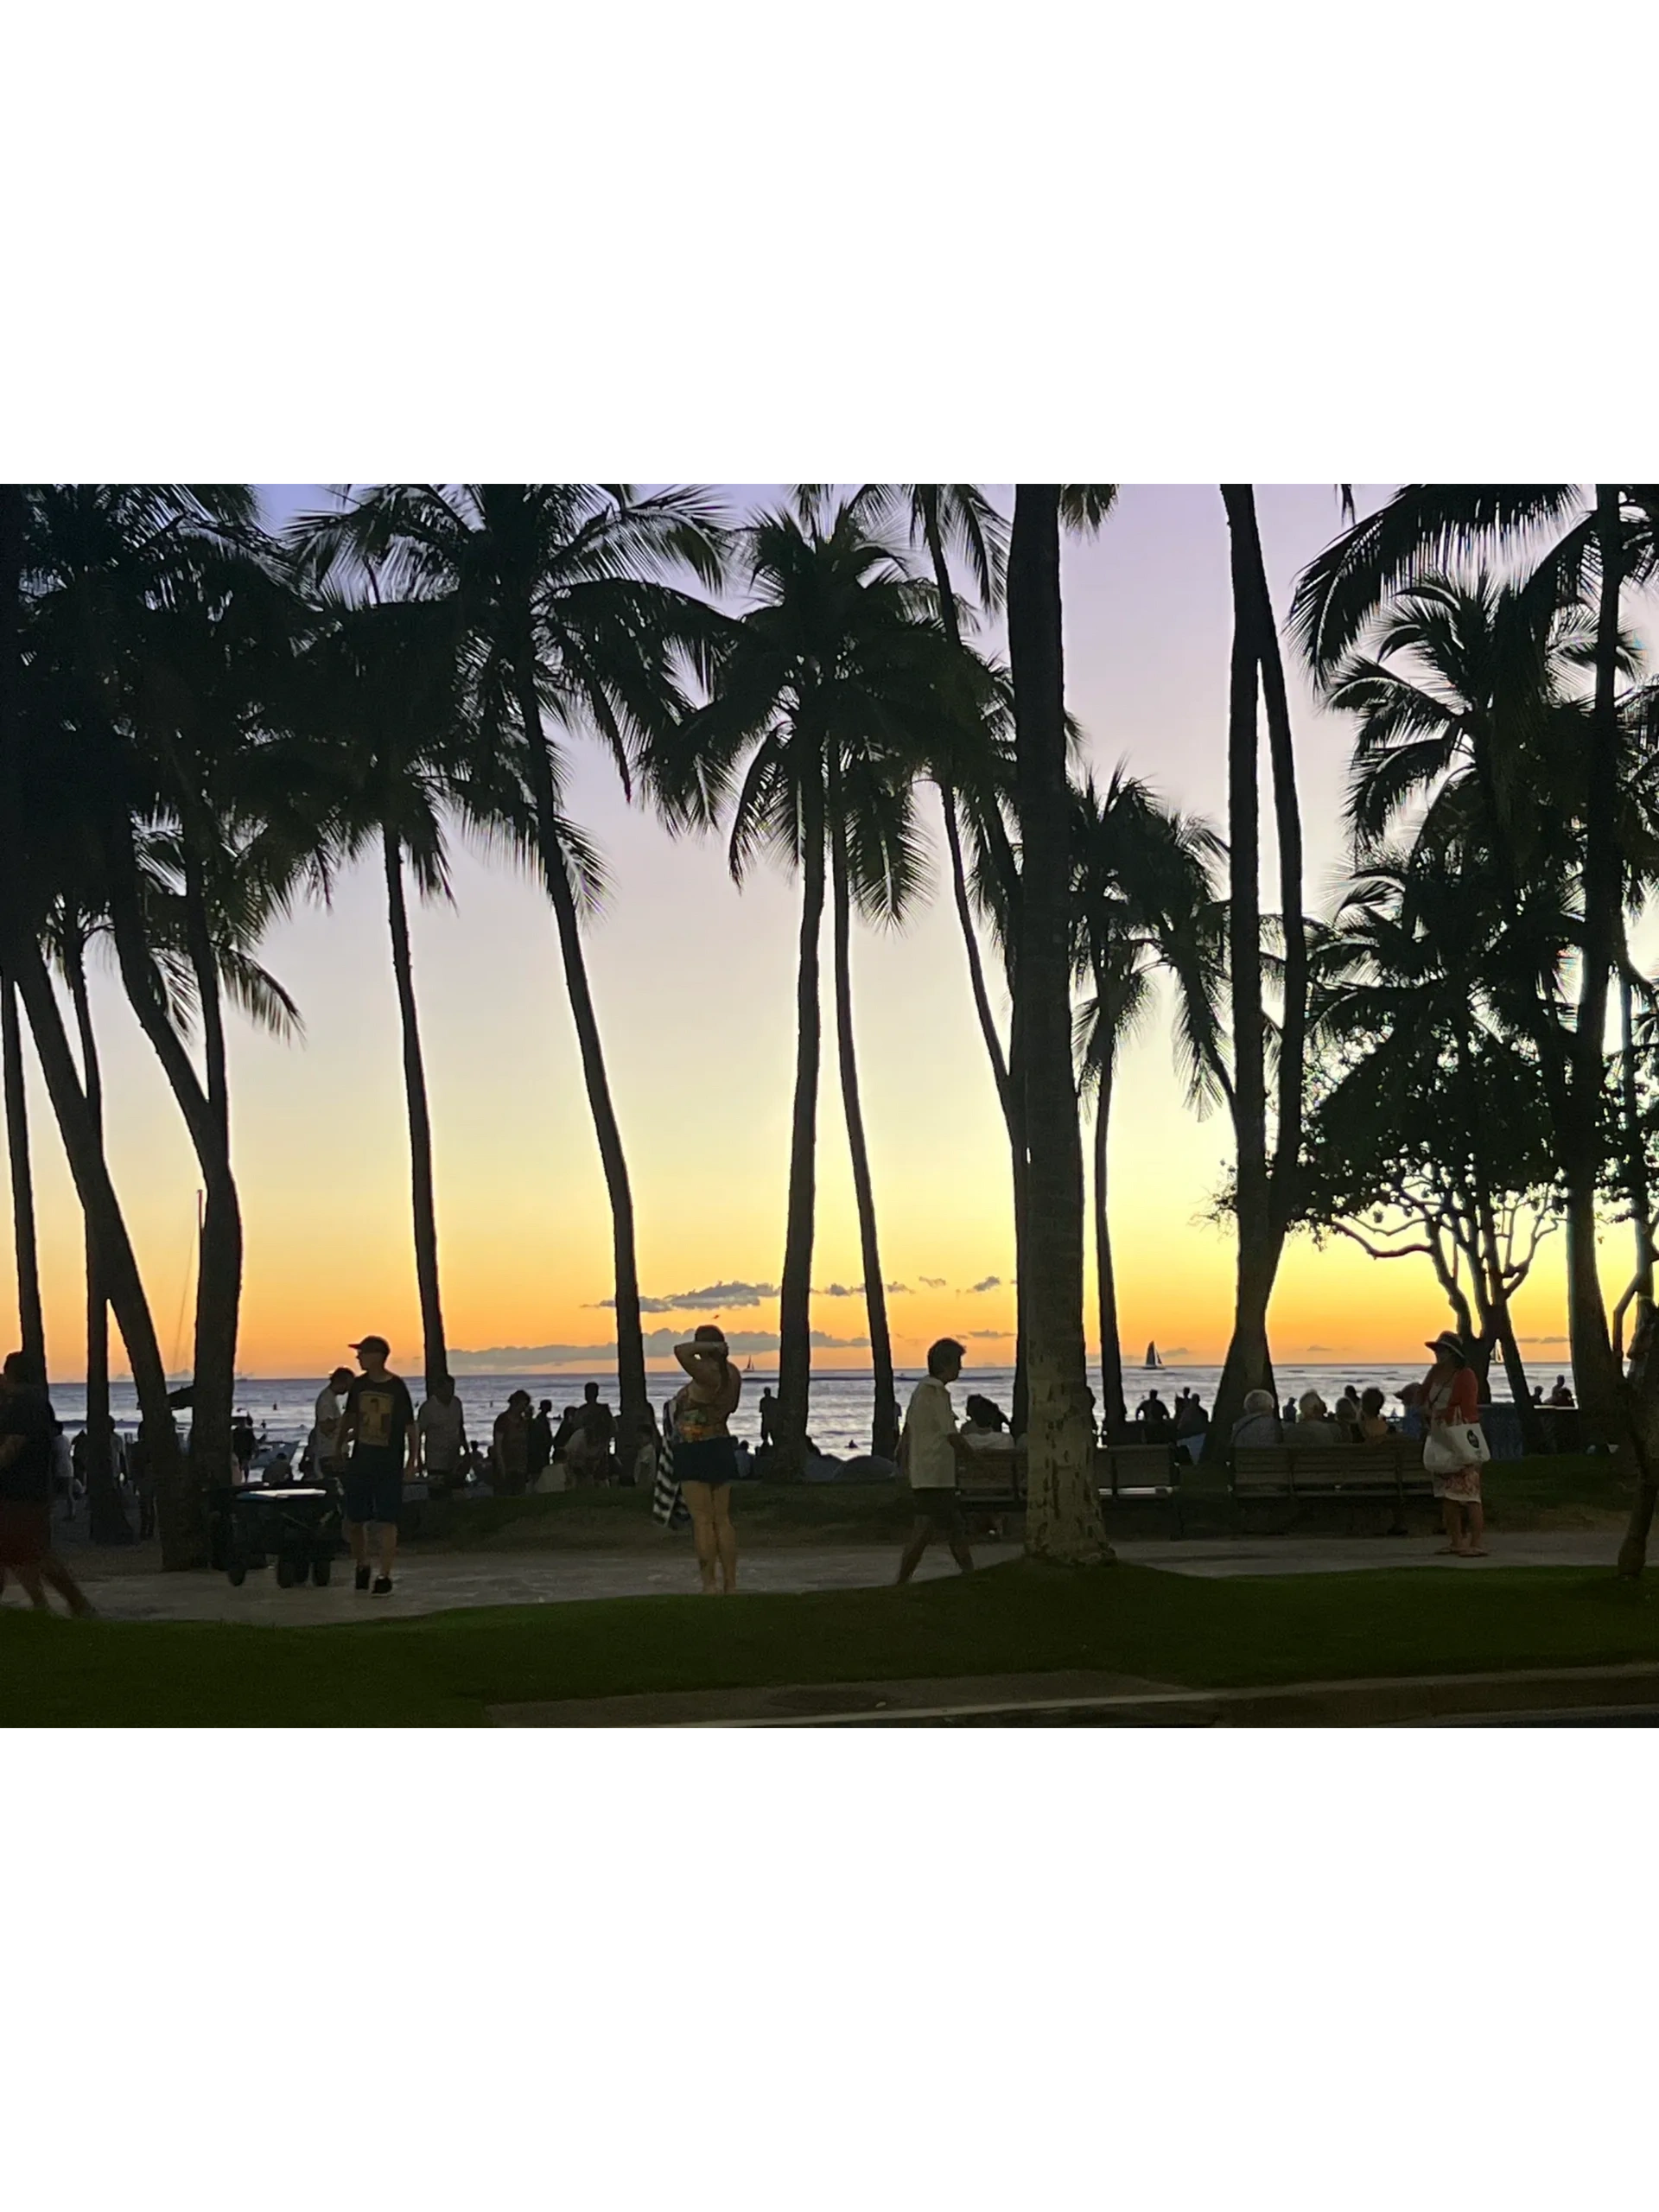 A Slice of Paradise: Vacationing at Waikiki Banyan in Hawaii